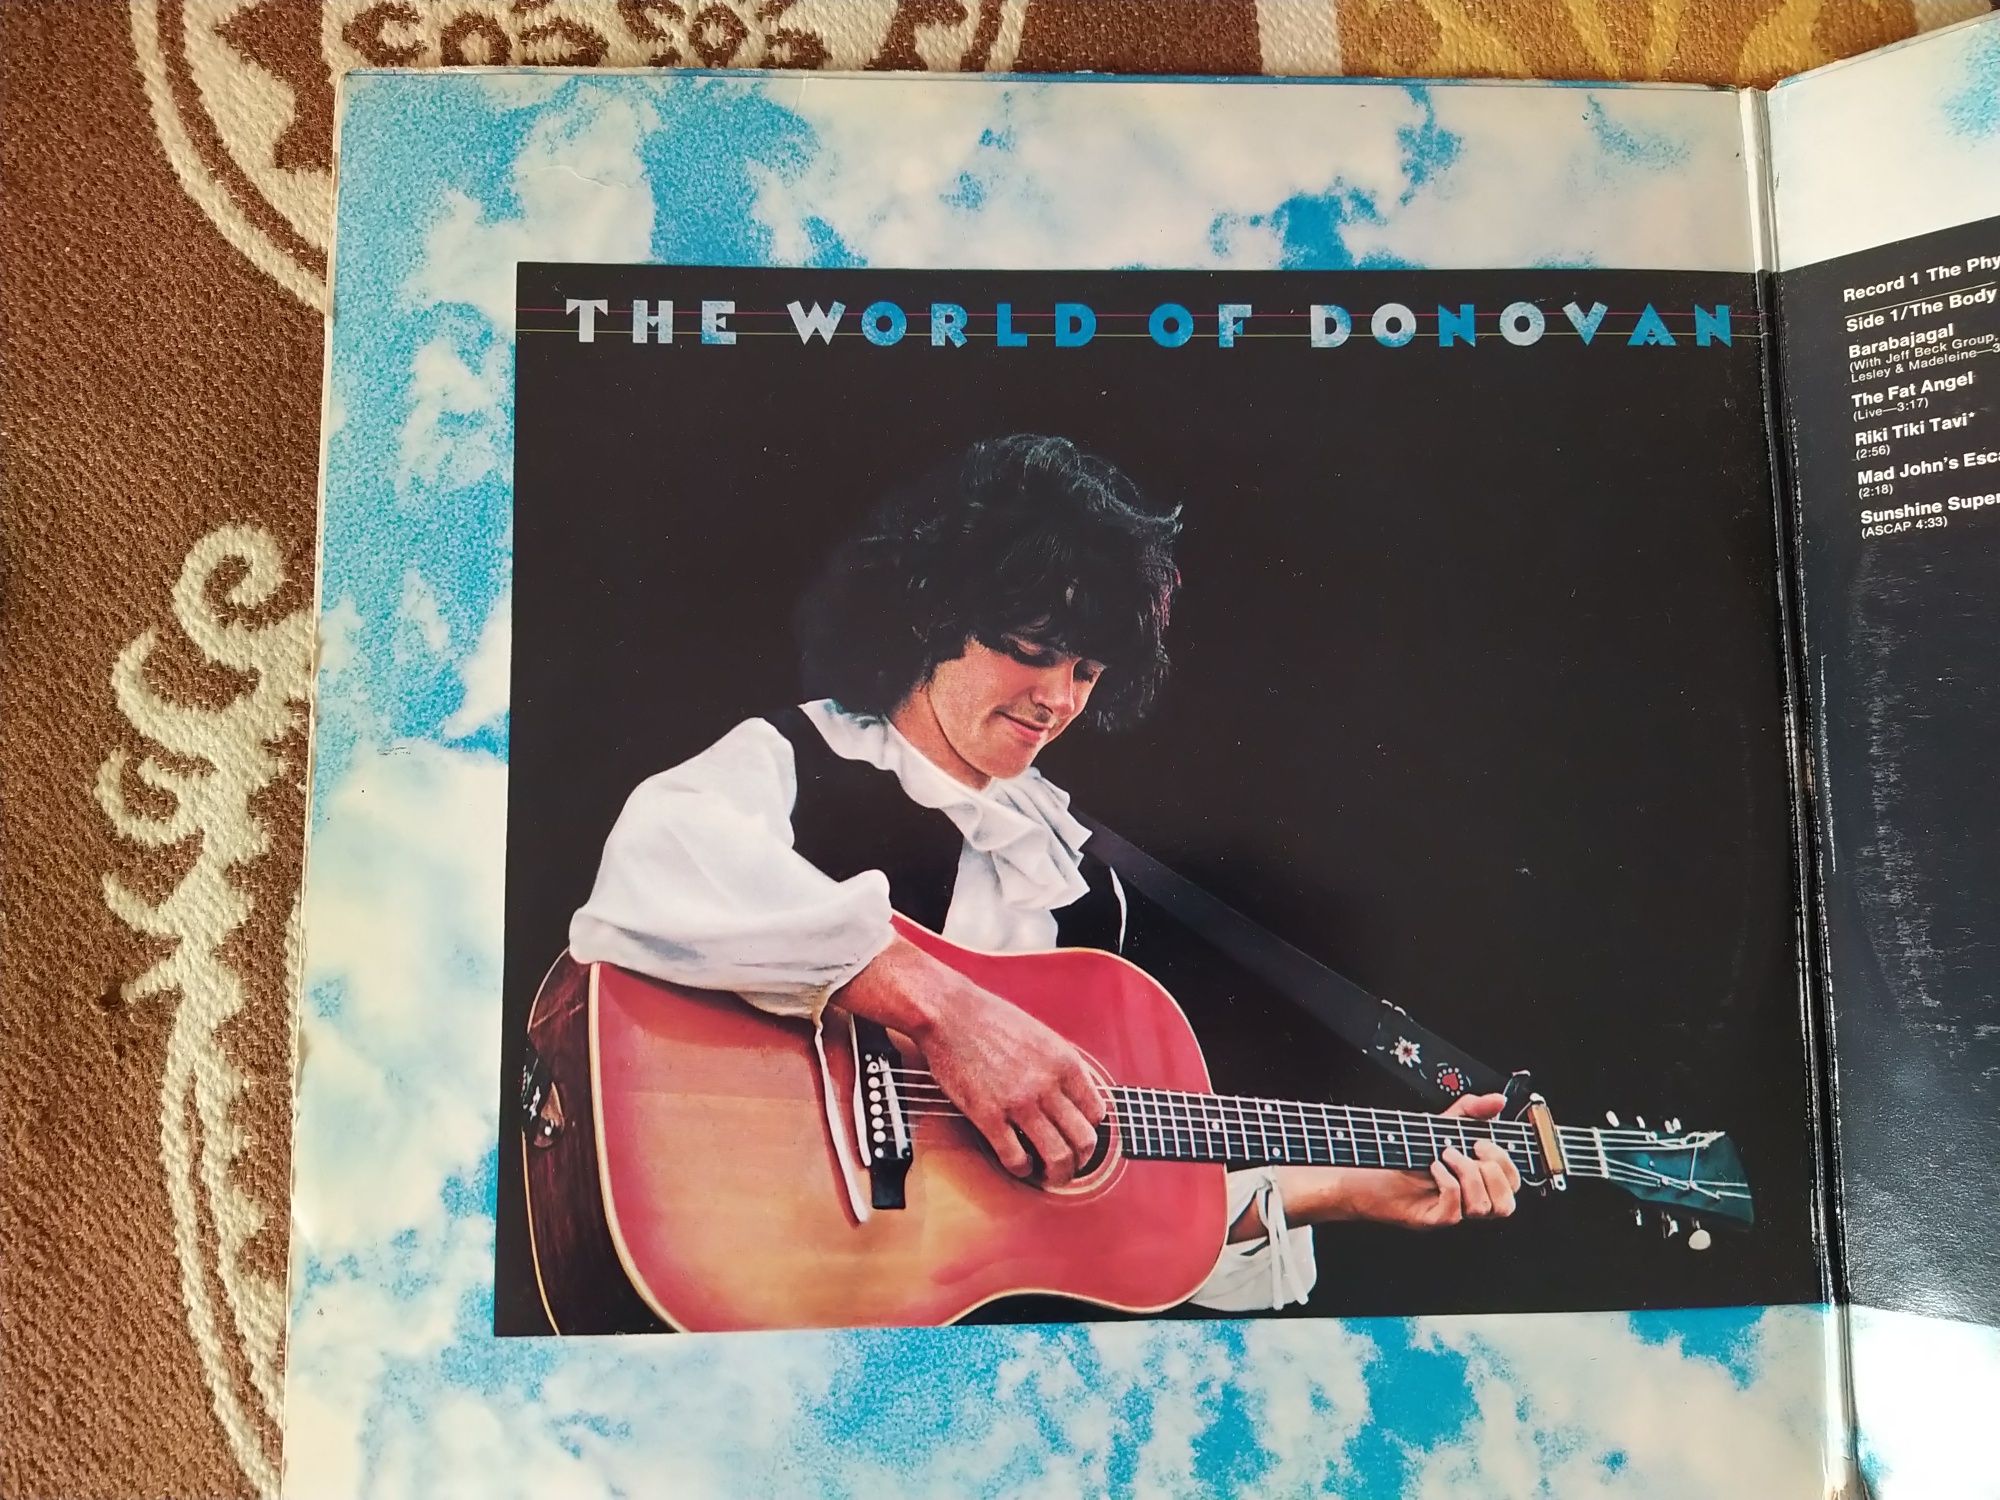 Donovan - The world of Donovan